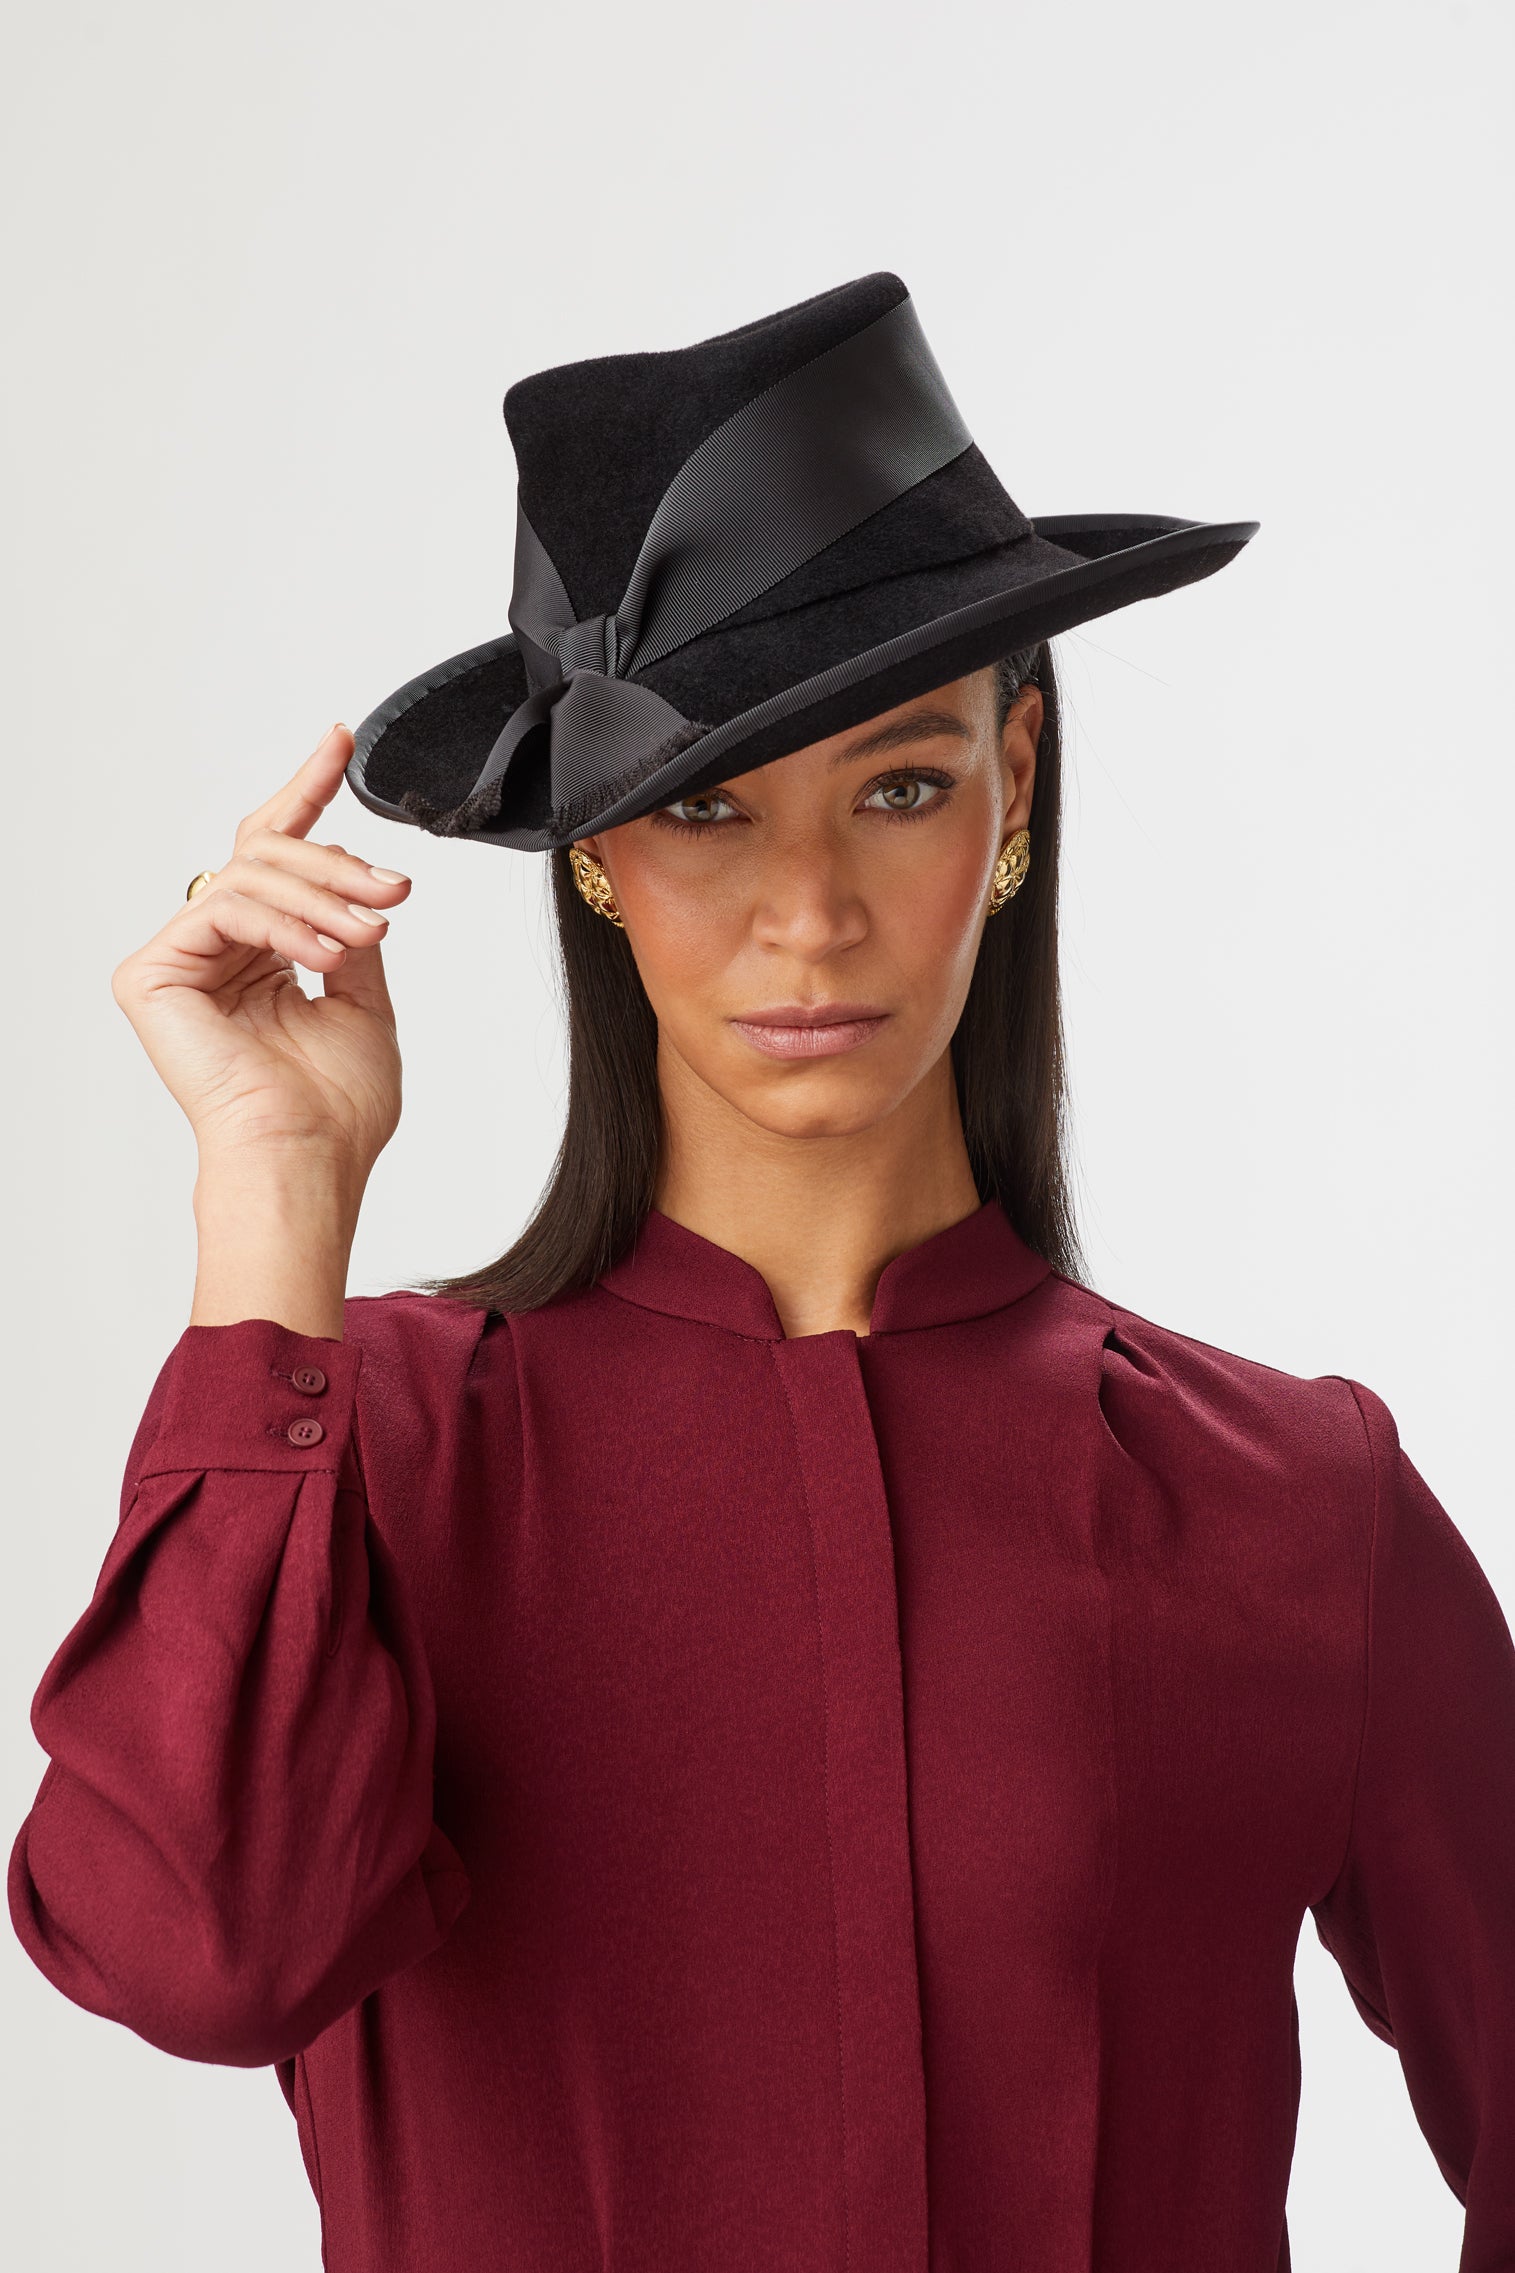 New Season Women's Hat Styles - Lock & Co. Hatters